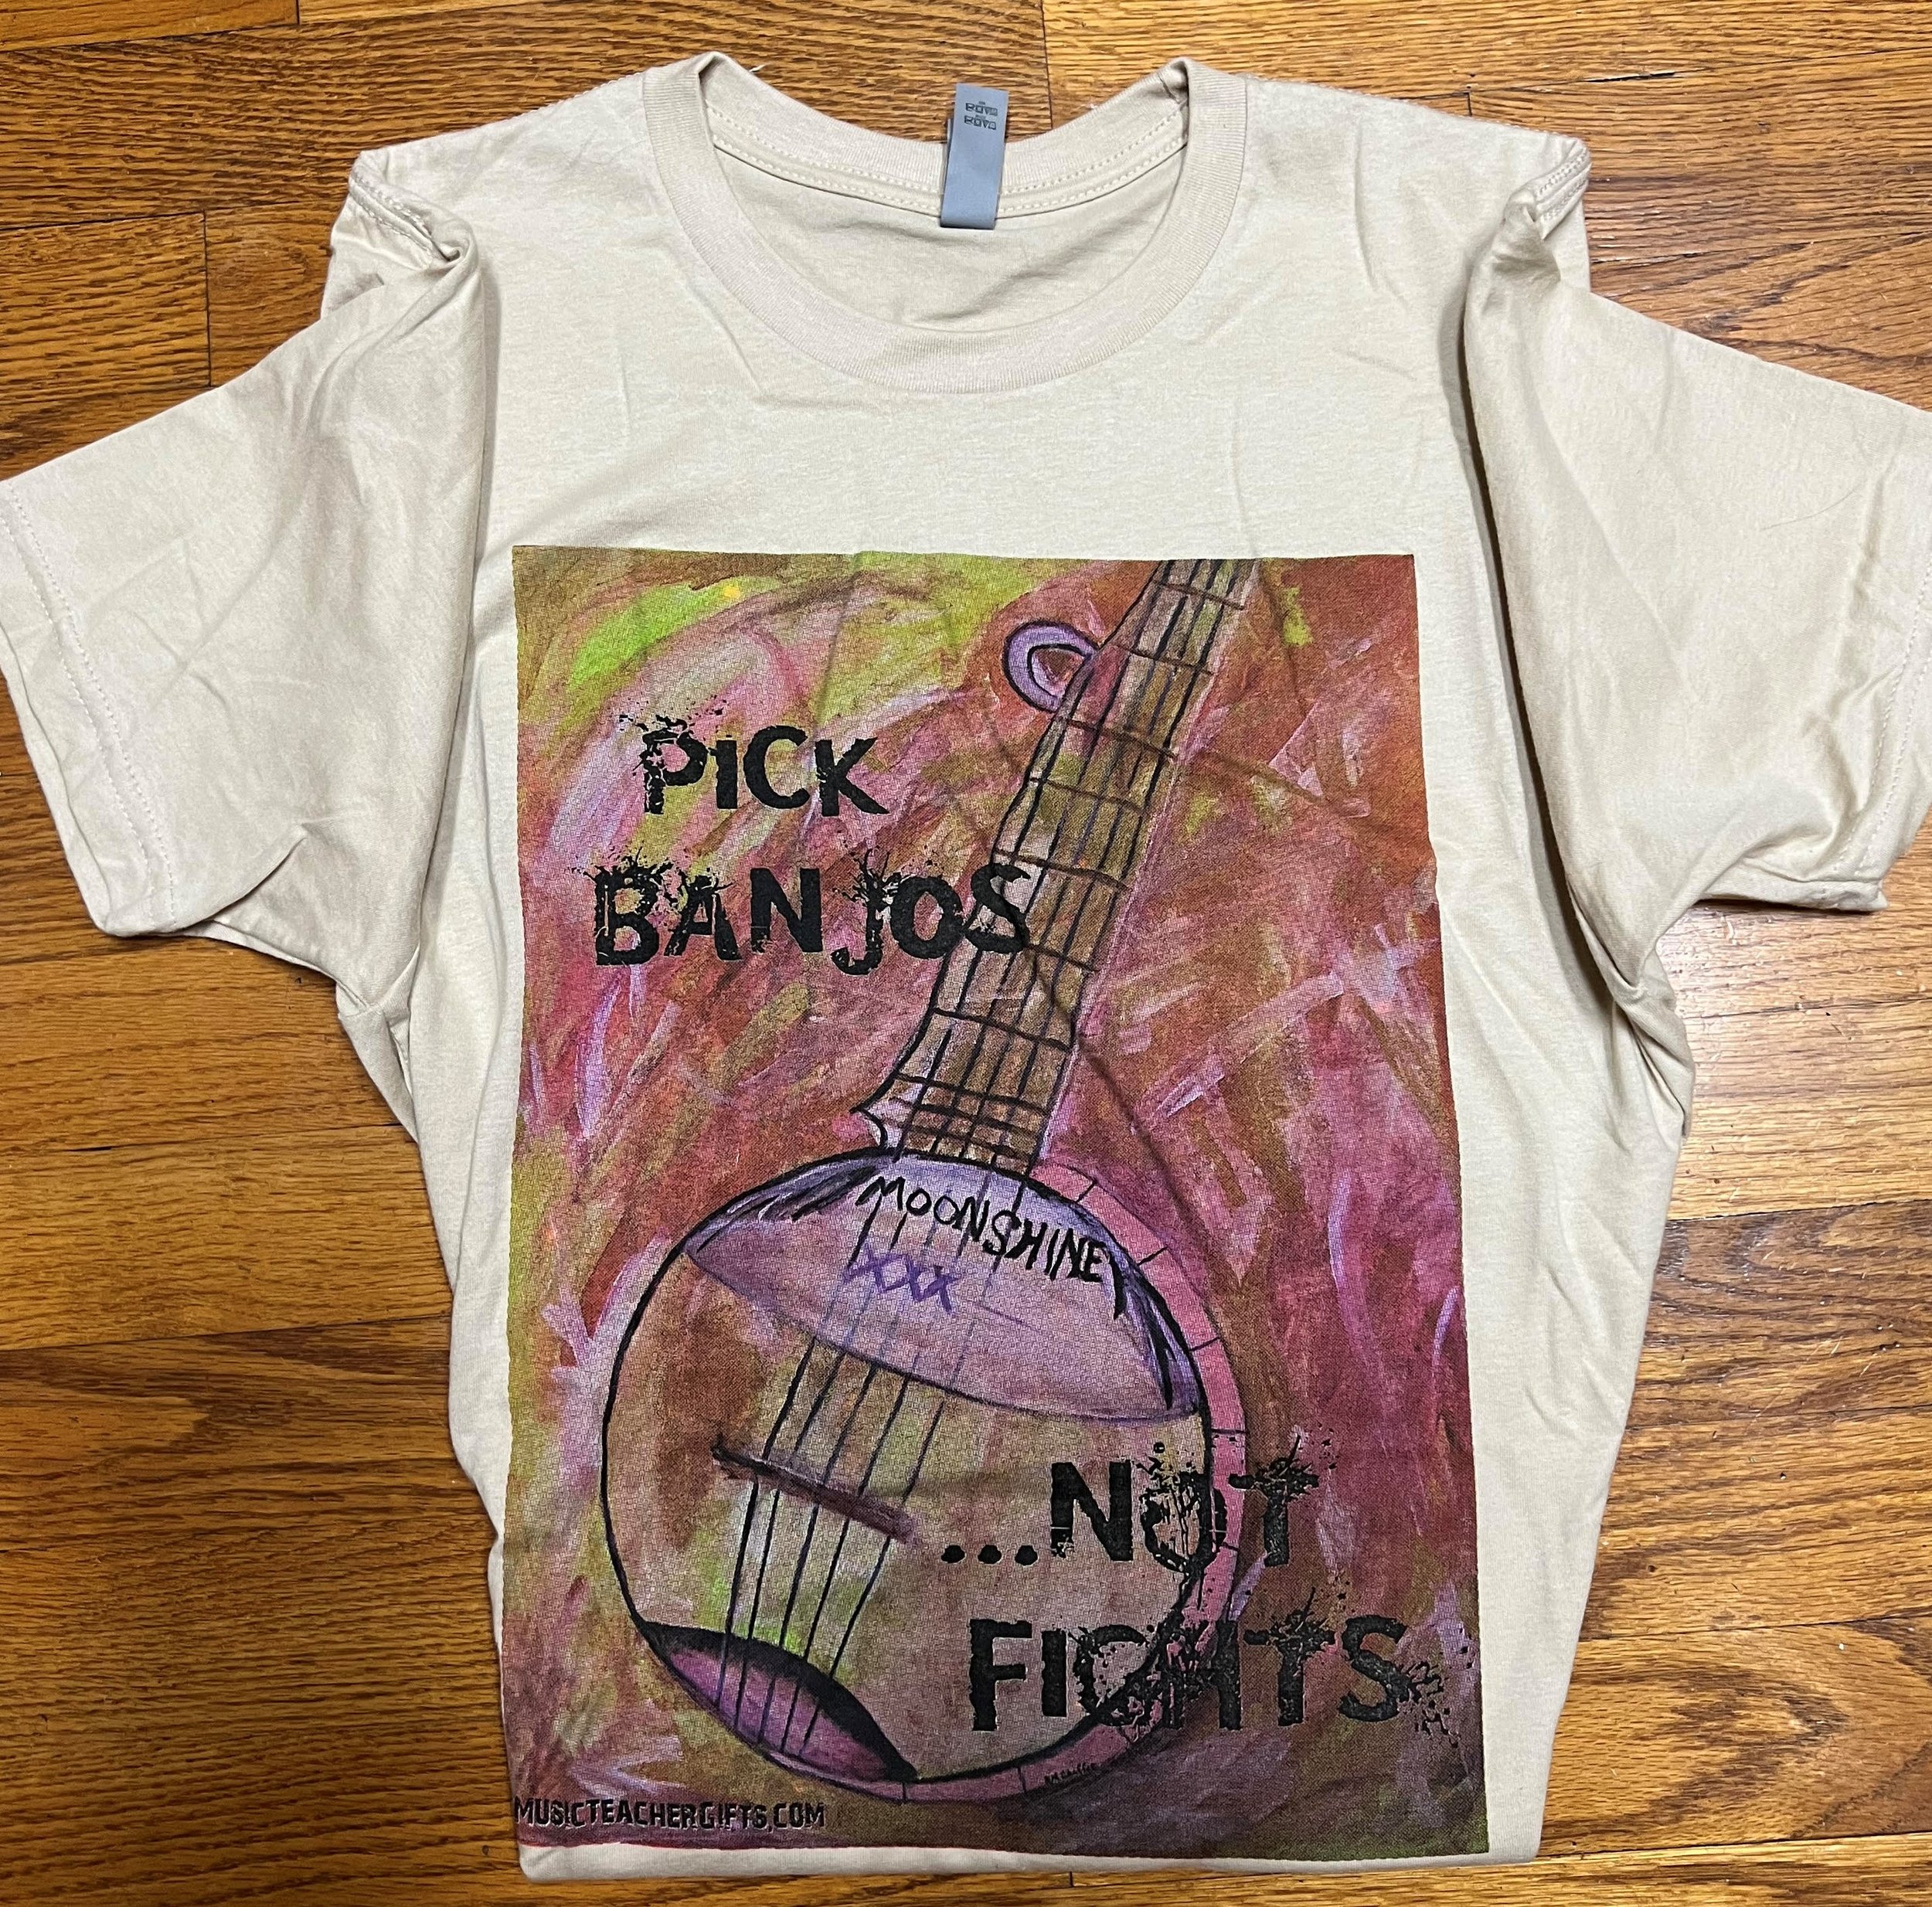 Banjo Tee shirts